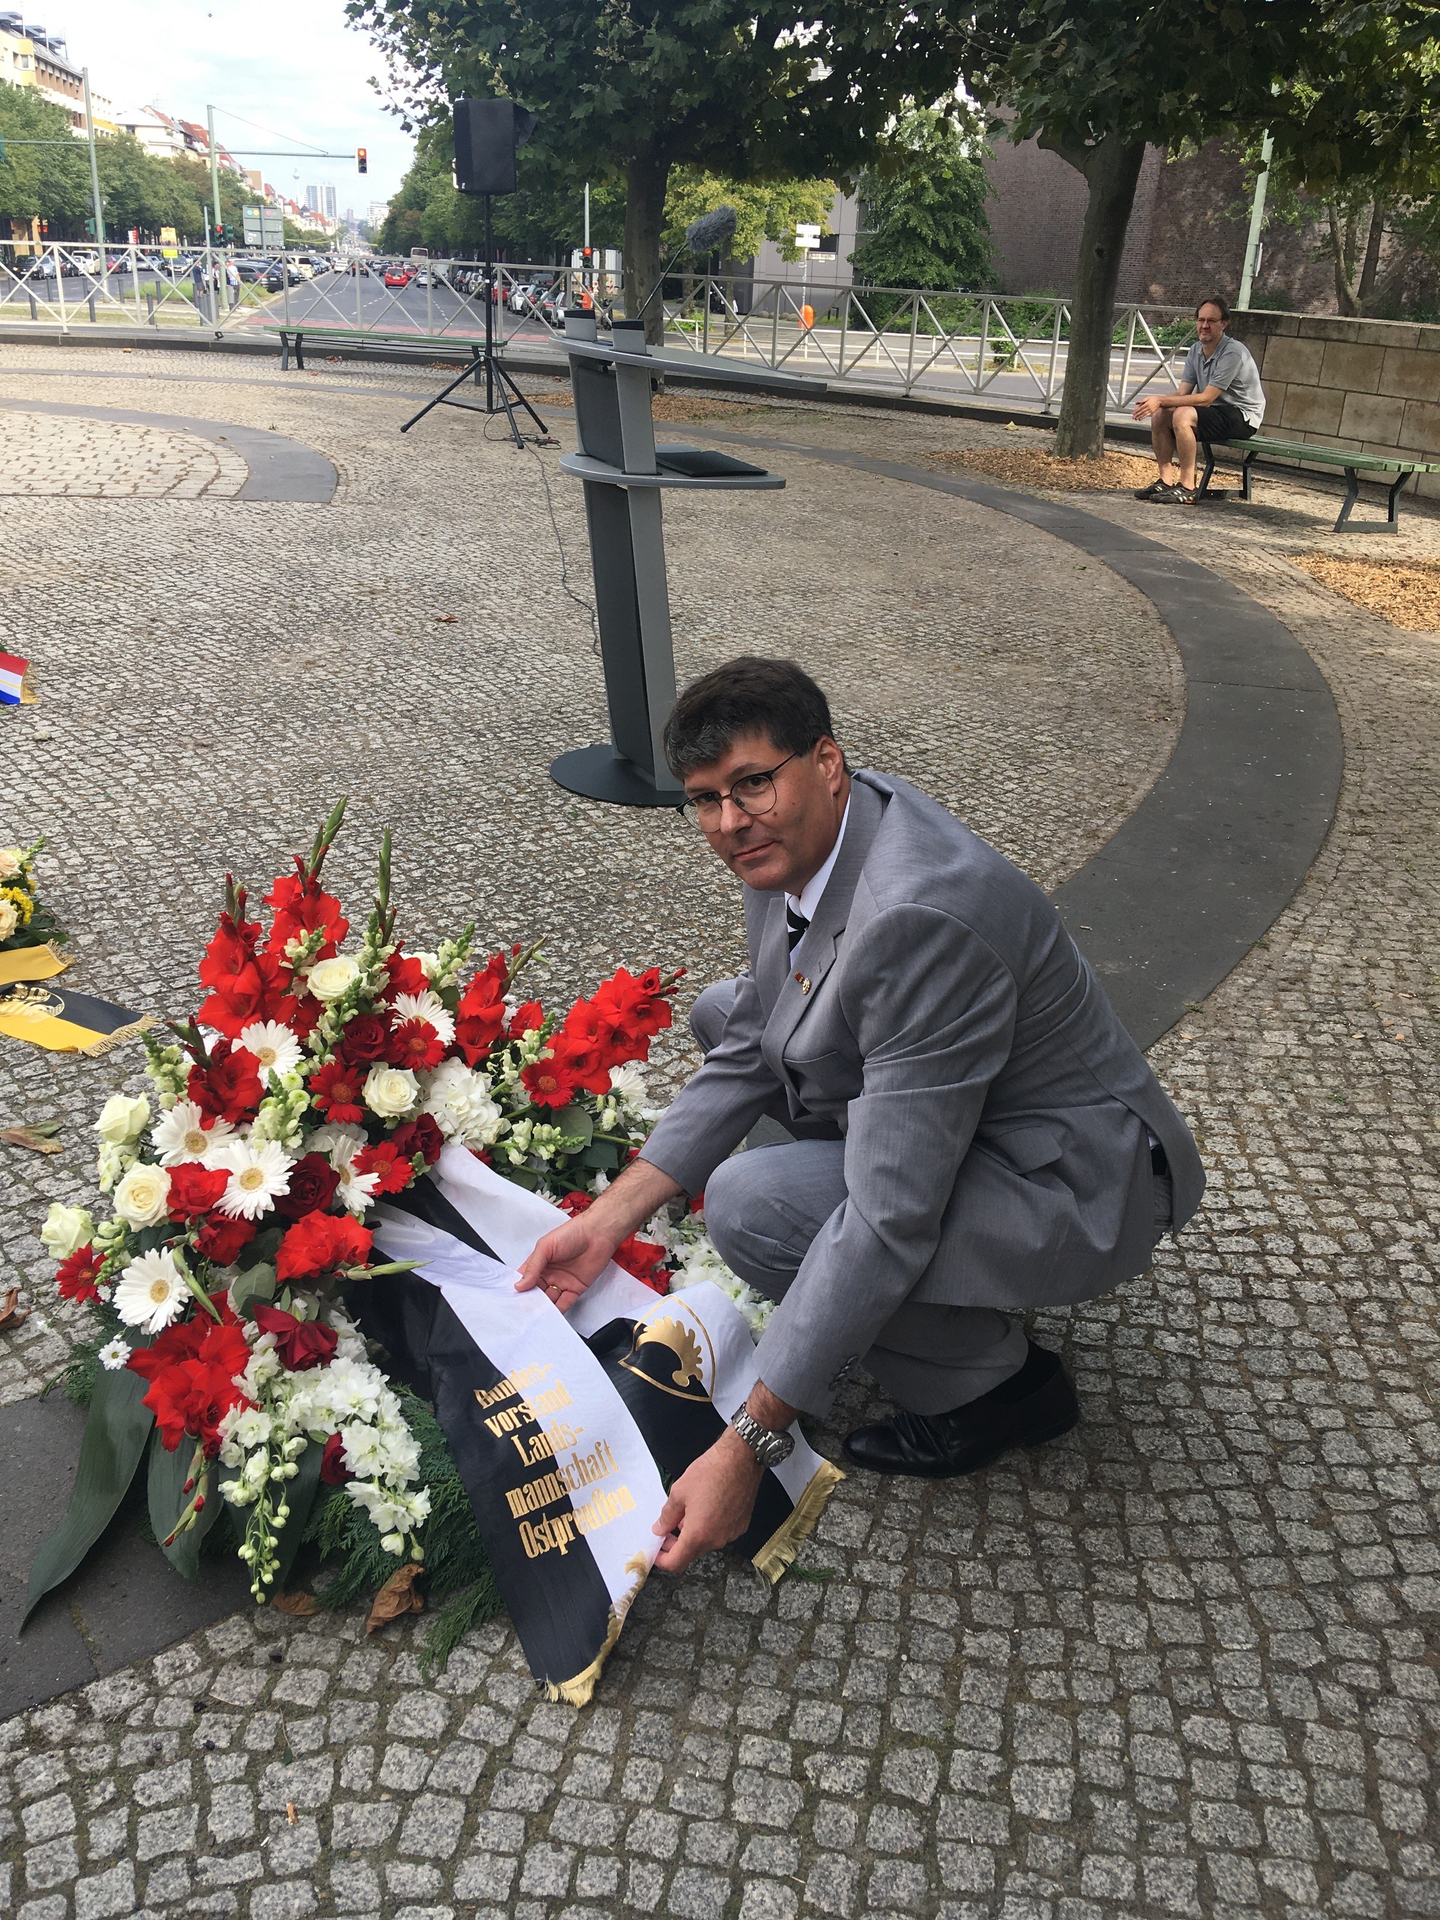 Stephan Grigat, Sprecher der Landsmannschaft Ostpreußen (LO), legte am 26. August im Namen des LO-Bundesvorstandes an der Ewigen Flamme auf dem Theodor-Heuss-Platz in Berlin einen Kranz nieder. 